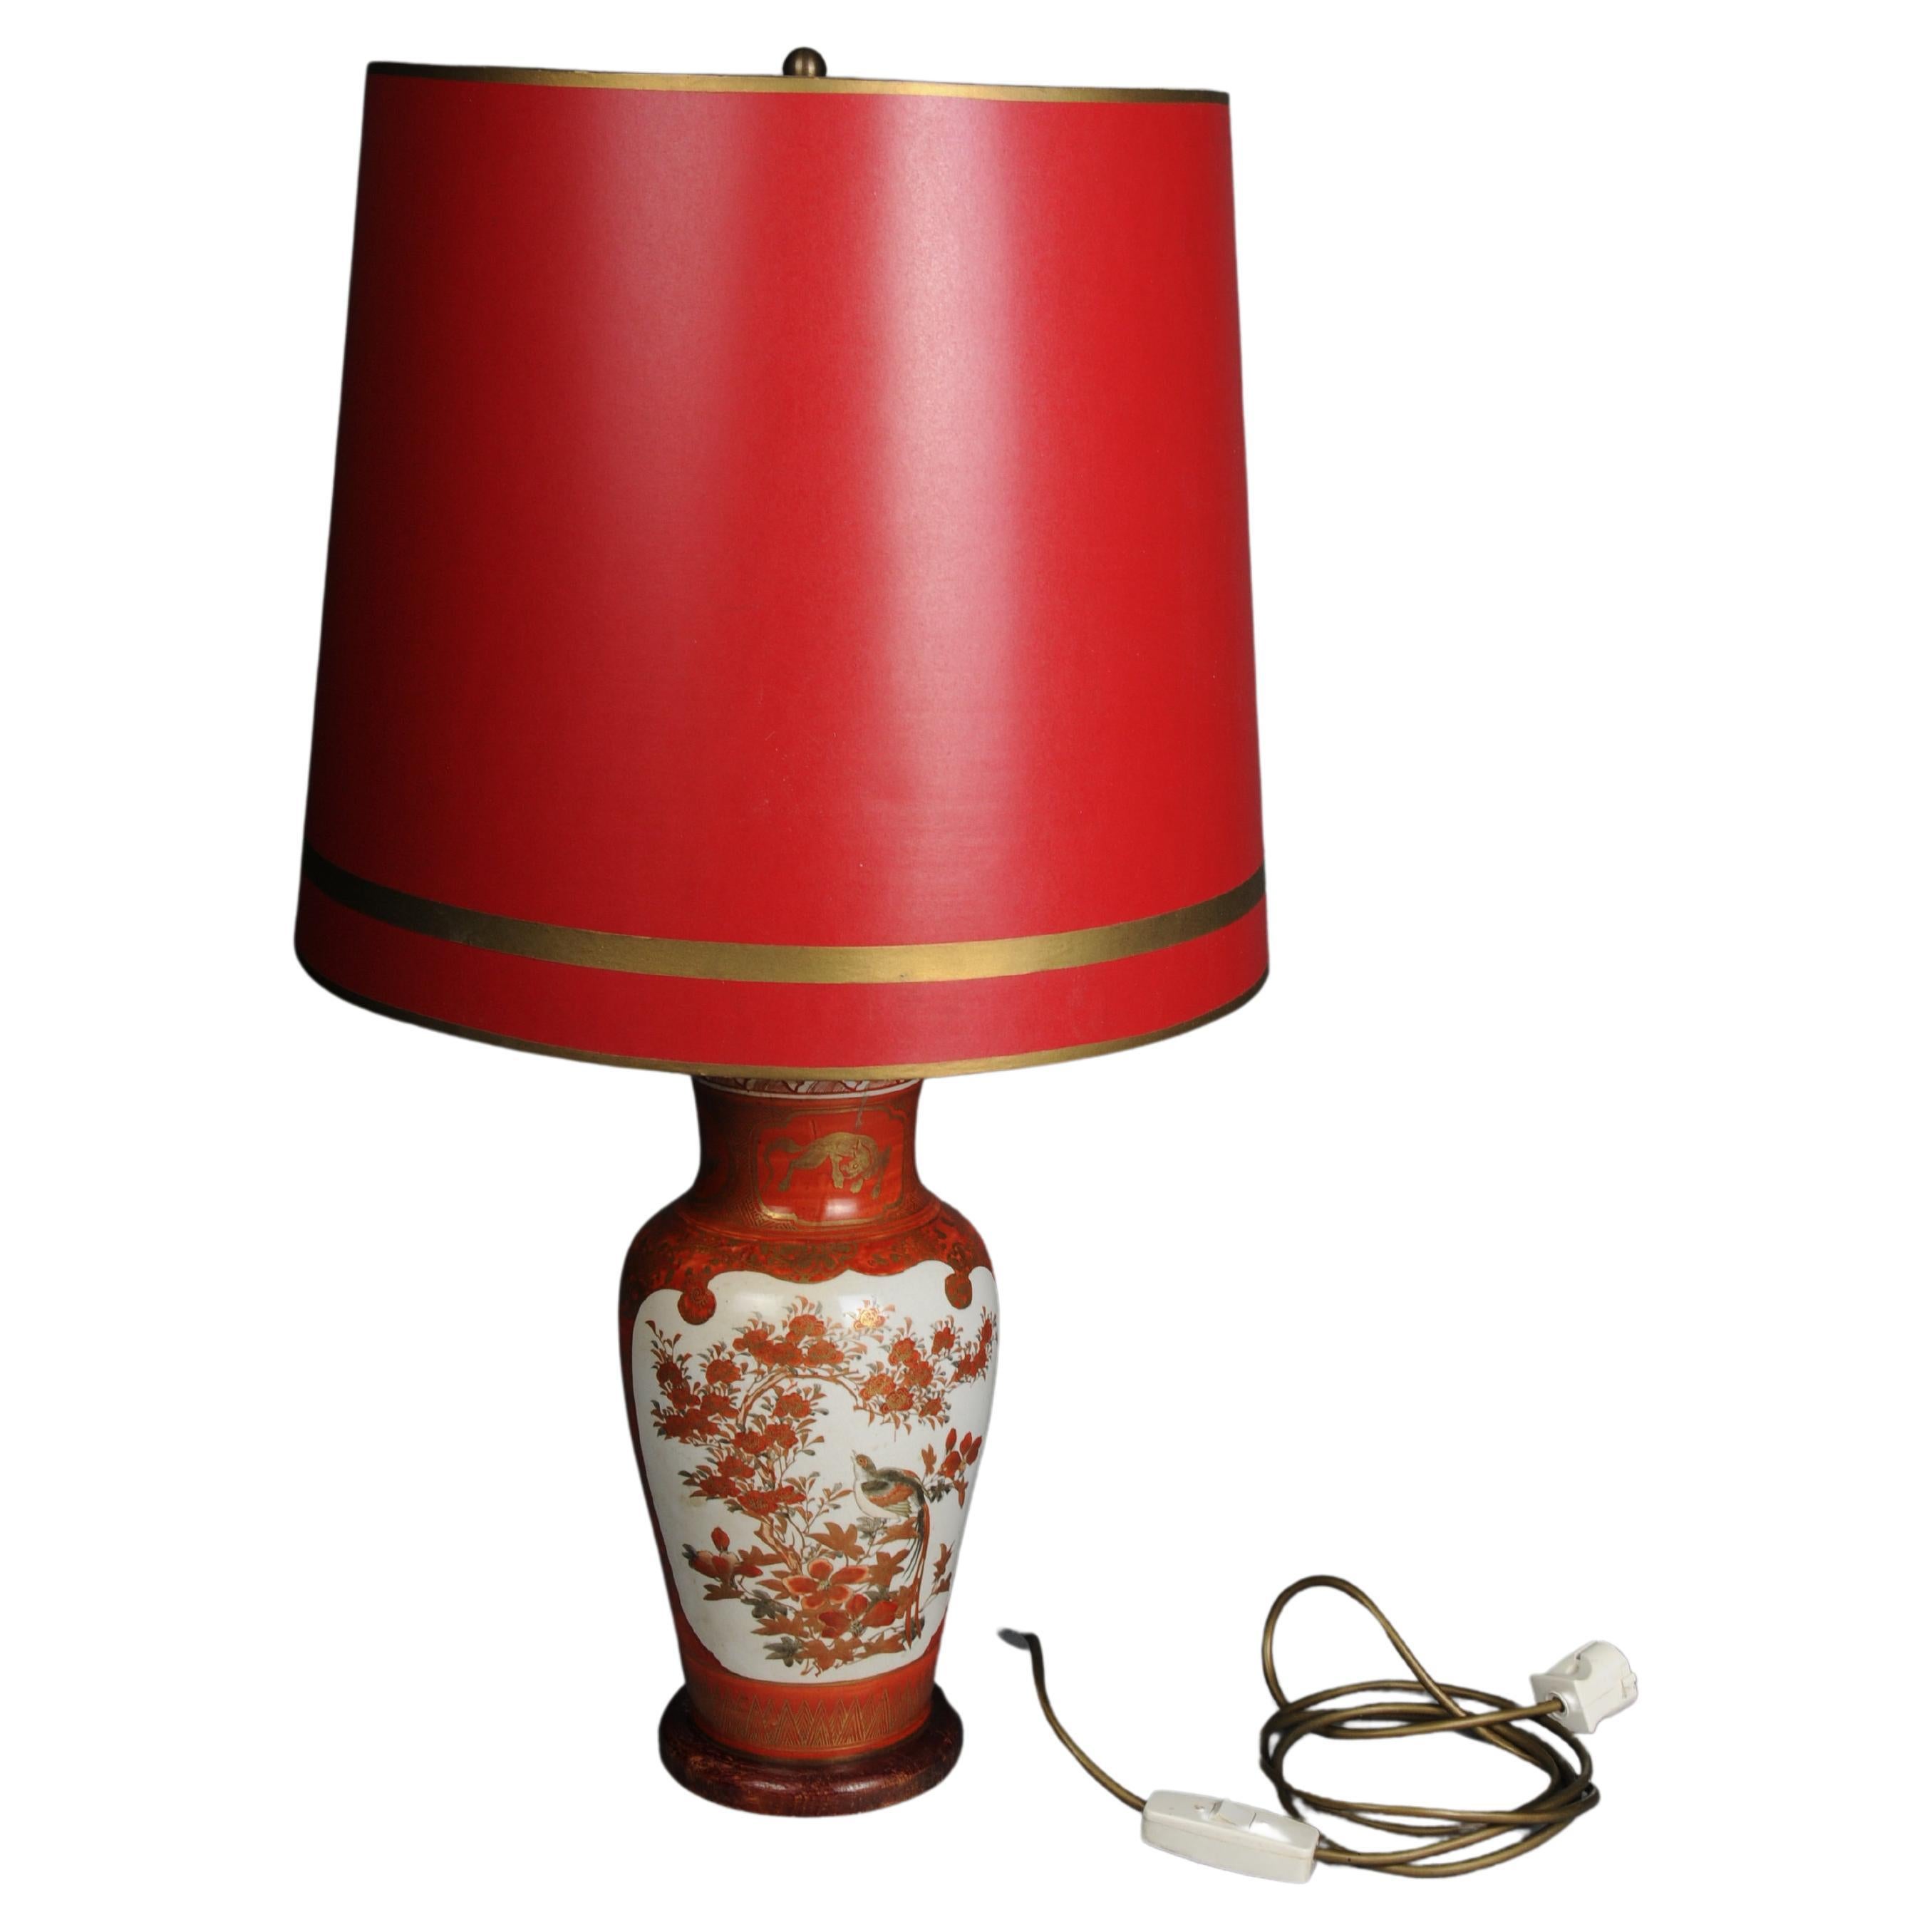 Lampe de table en porcelaine asiatique ancienne, rouge avec abat-jour, électrifiée